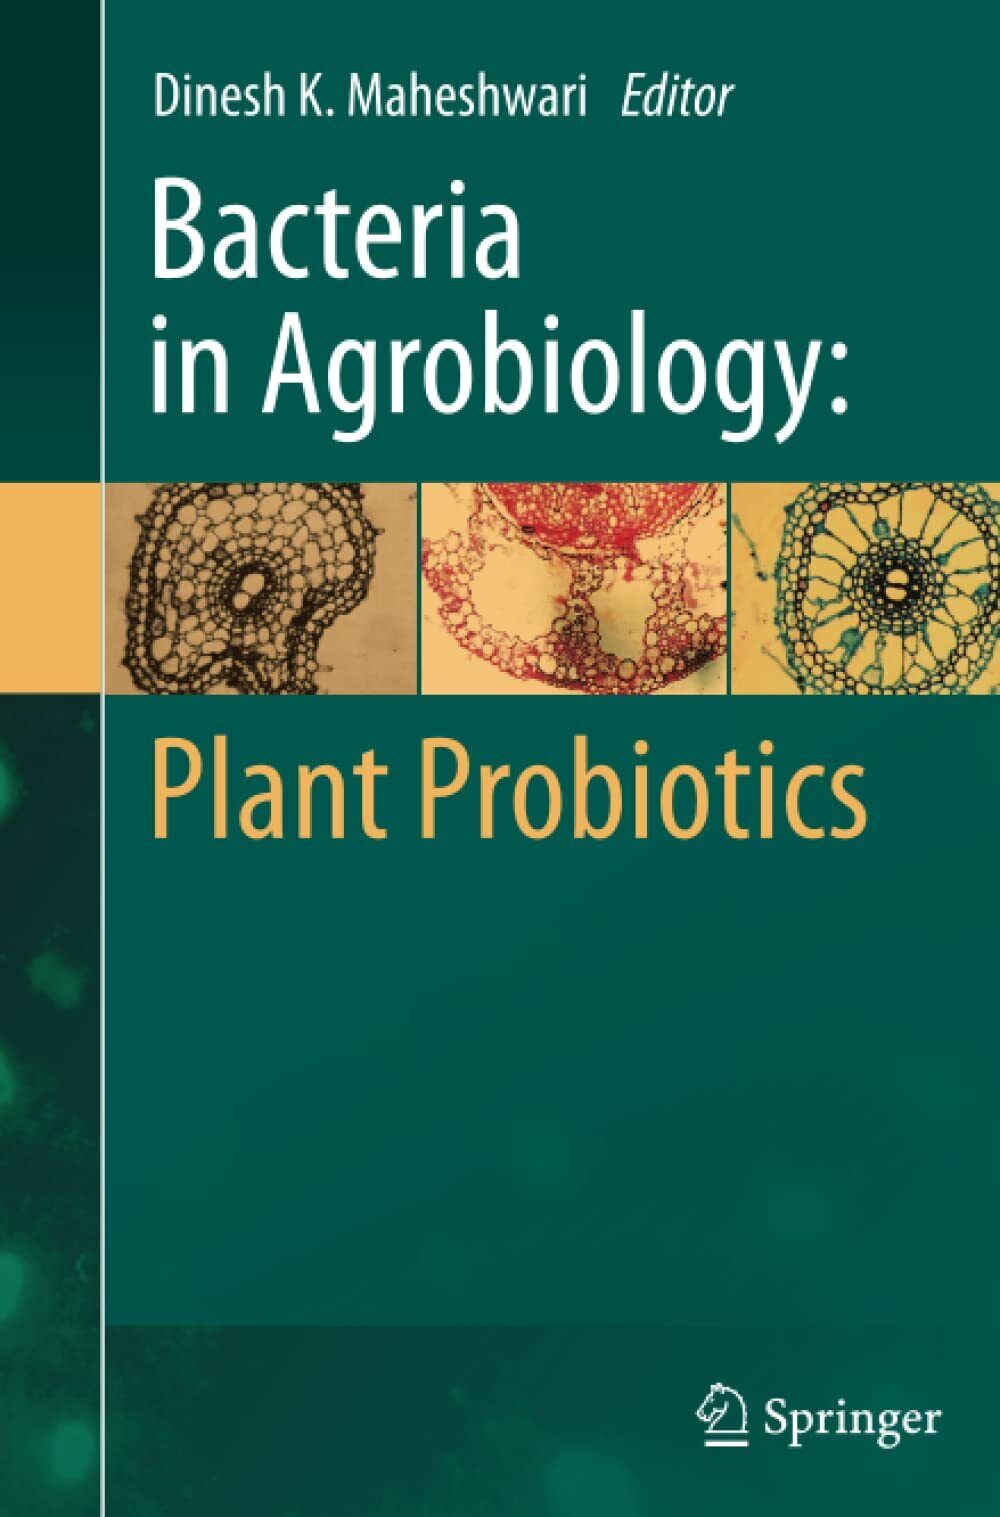 Bacteria in Agrobiology - Dinesh K. Maheshwari - Springer, 2014